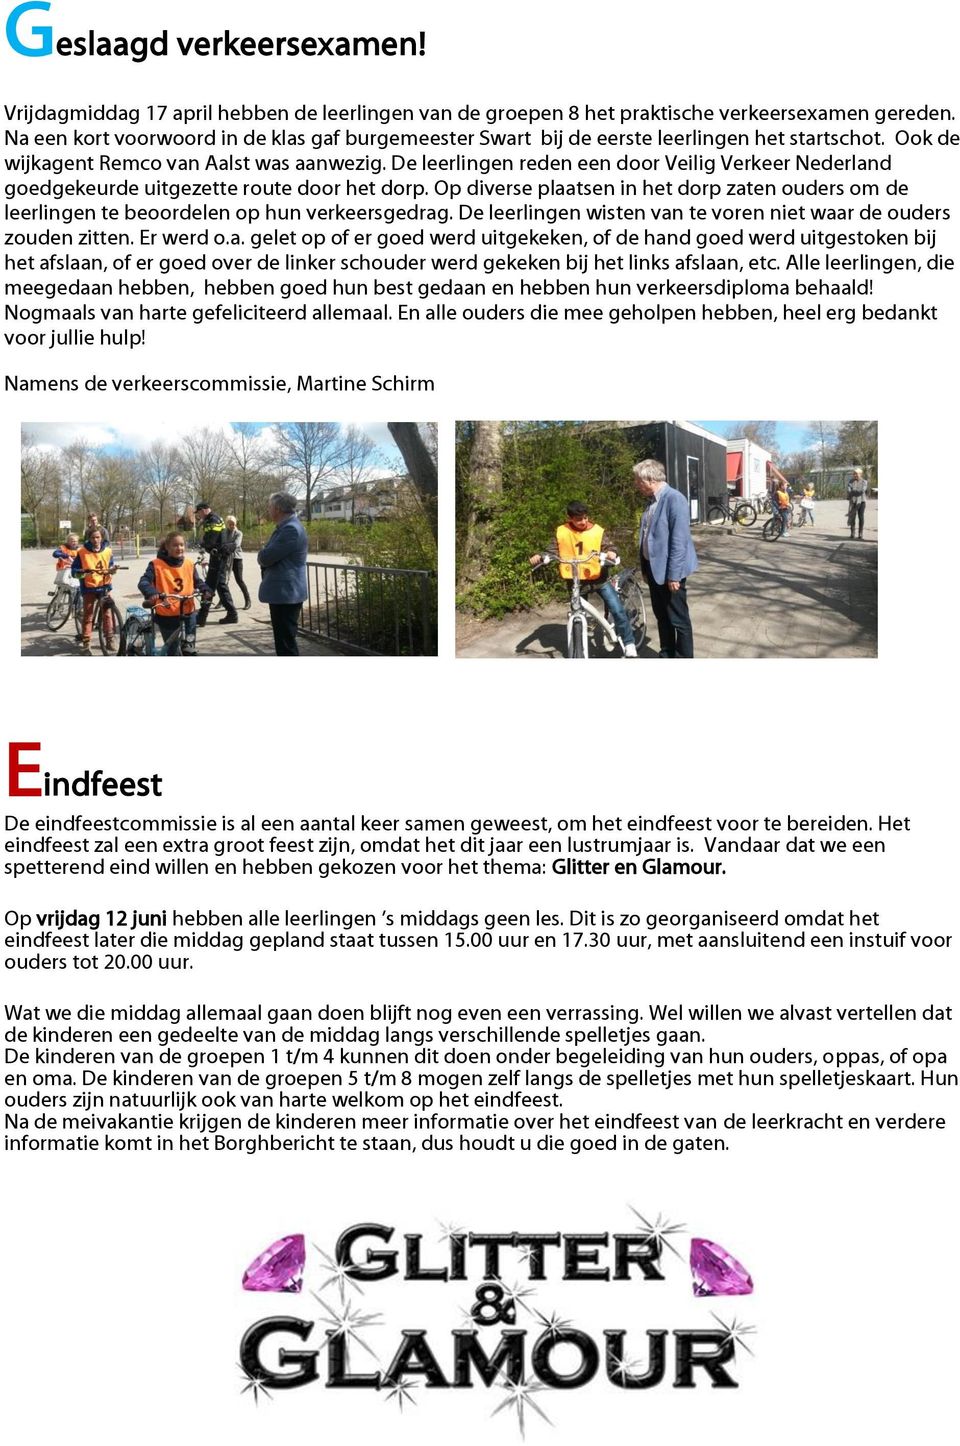 De leerlingen reden een door Veilig Verkeer Nederland goedgekeurde uitgezette route door het dorp. Op diverse plaatsen in het dorp zaten ouders om de leerlingen te beoordelen op hun verkeersgedrag.